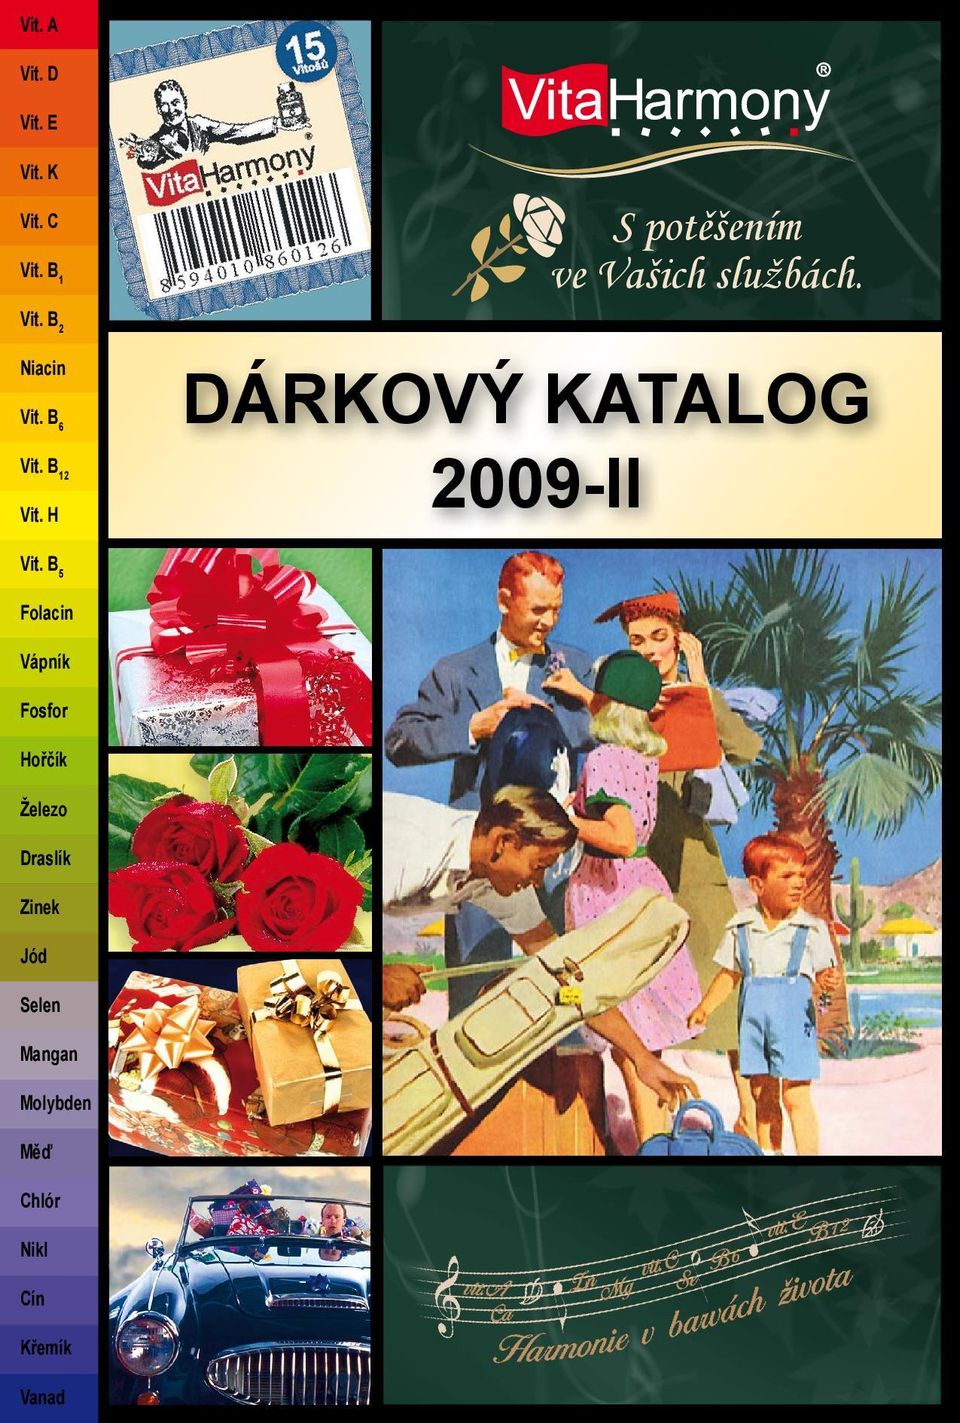 DÁRKOVÝ KATALOG 2009-II Vit.